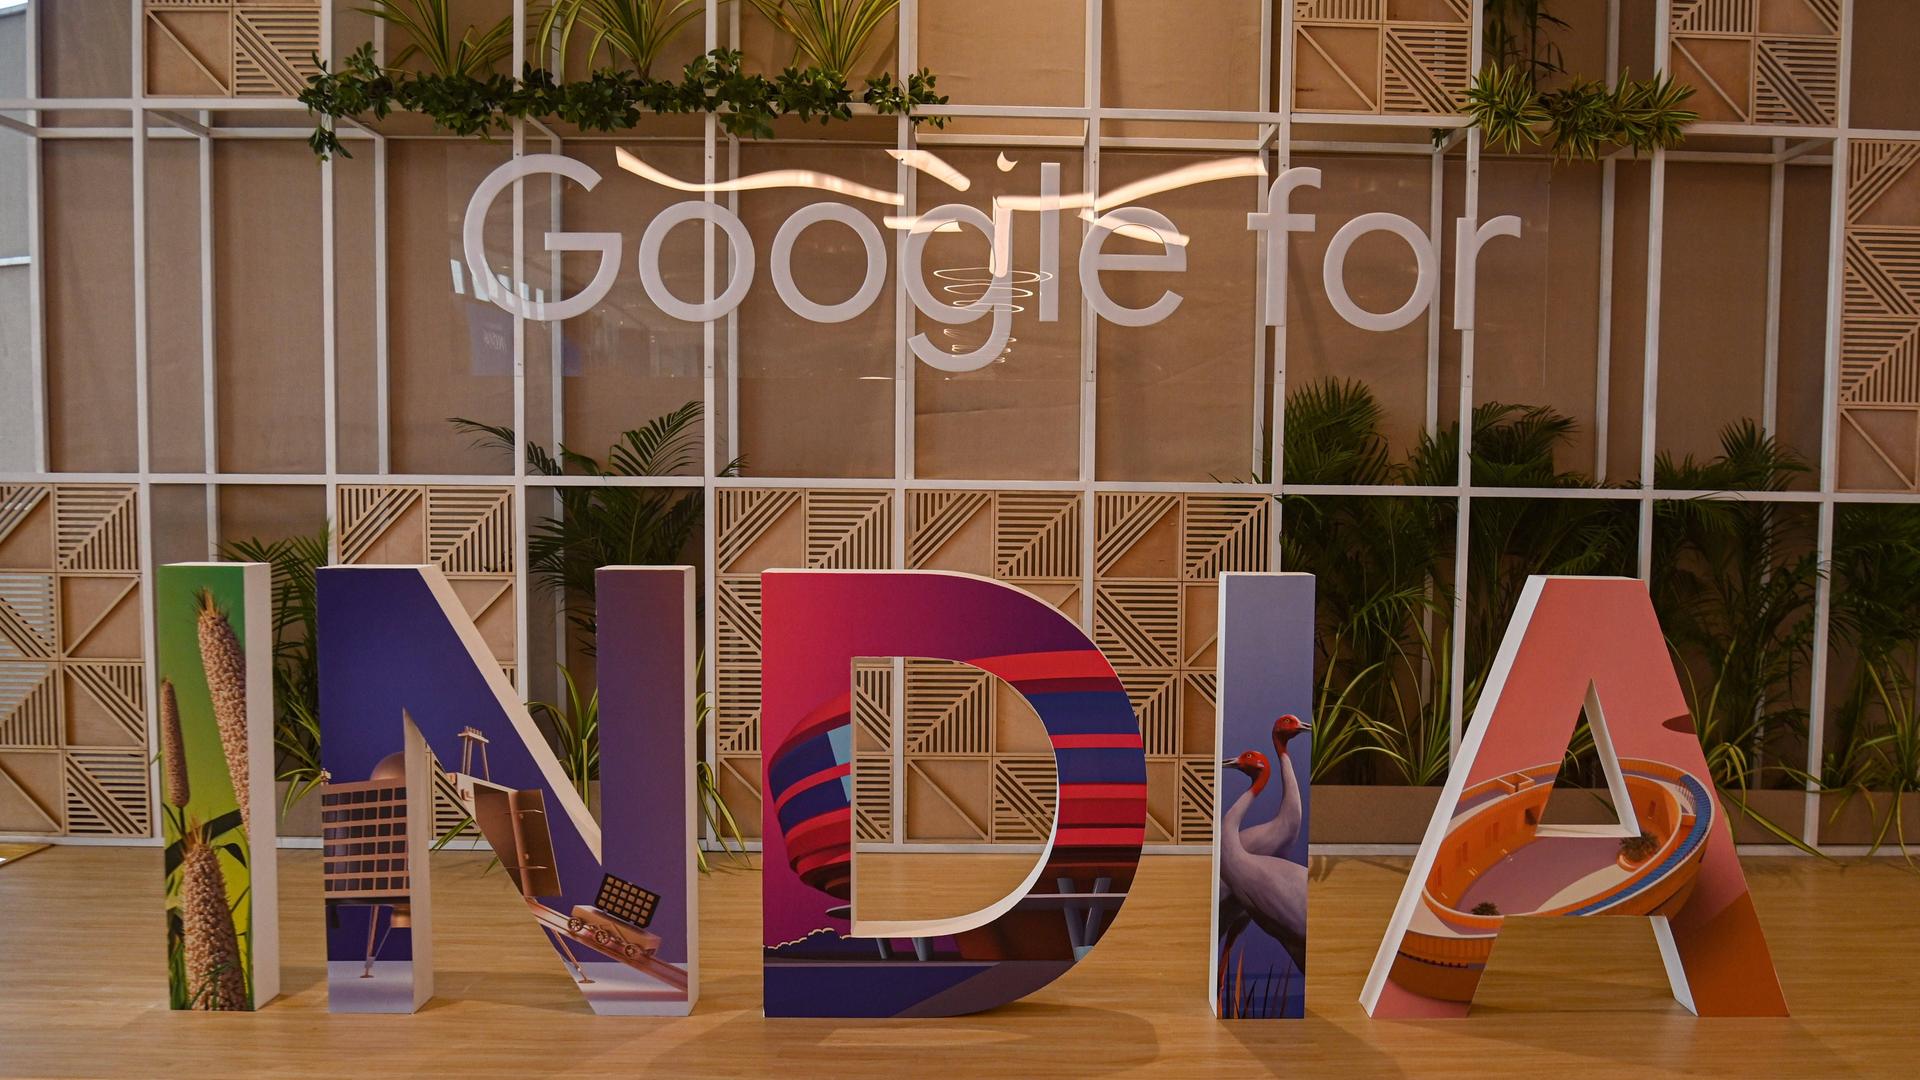 Ein weißer Schriftzug "Google for" an einer Glaswand und große, bunte Buchstaben "India" auf dem Boden.